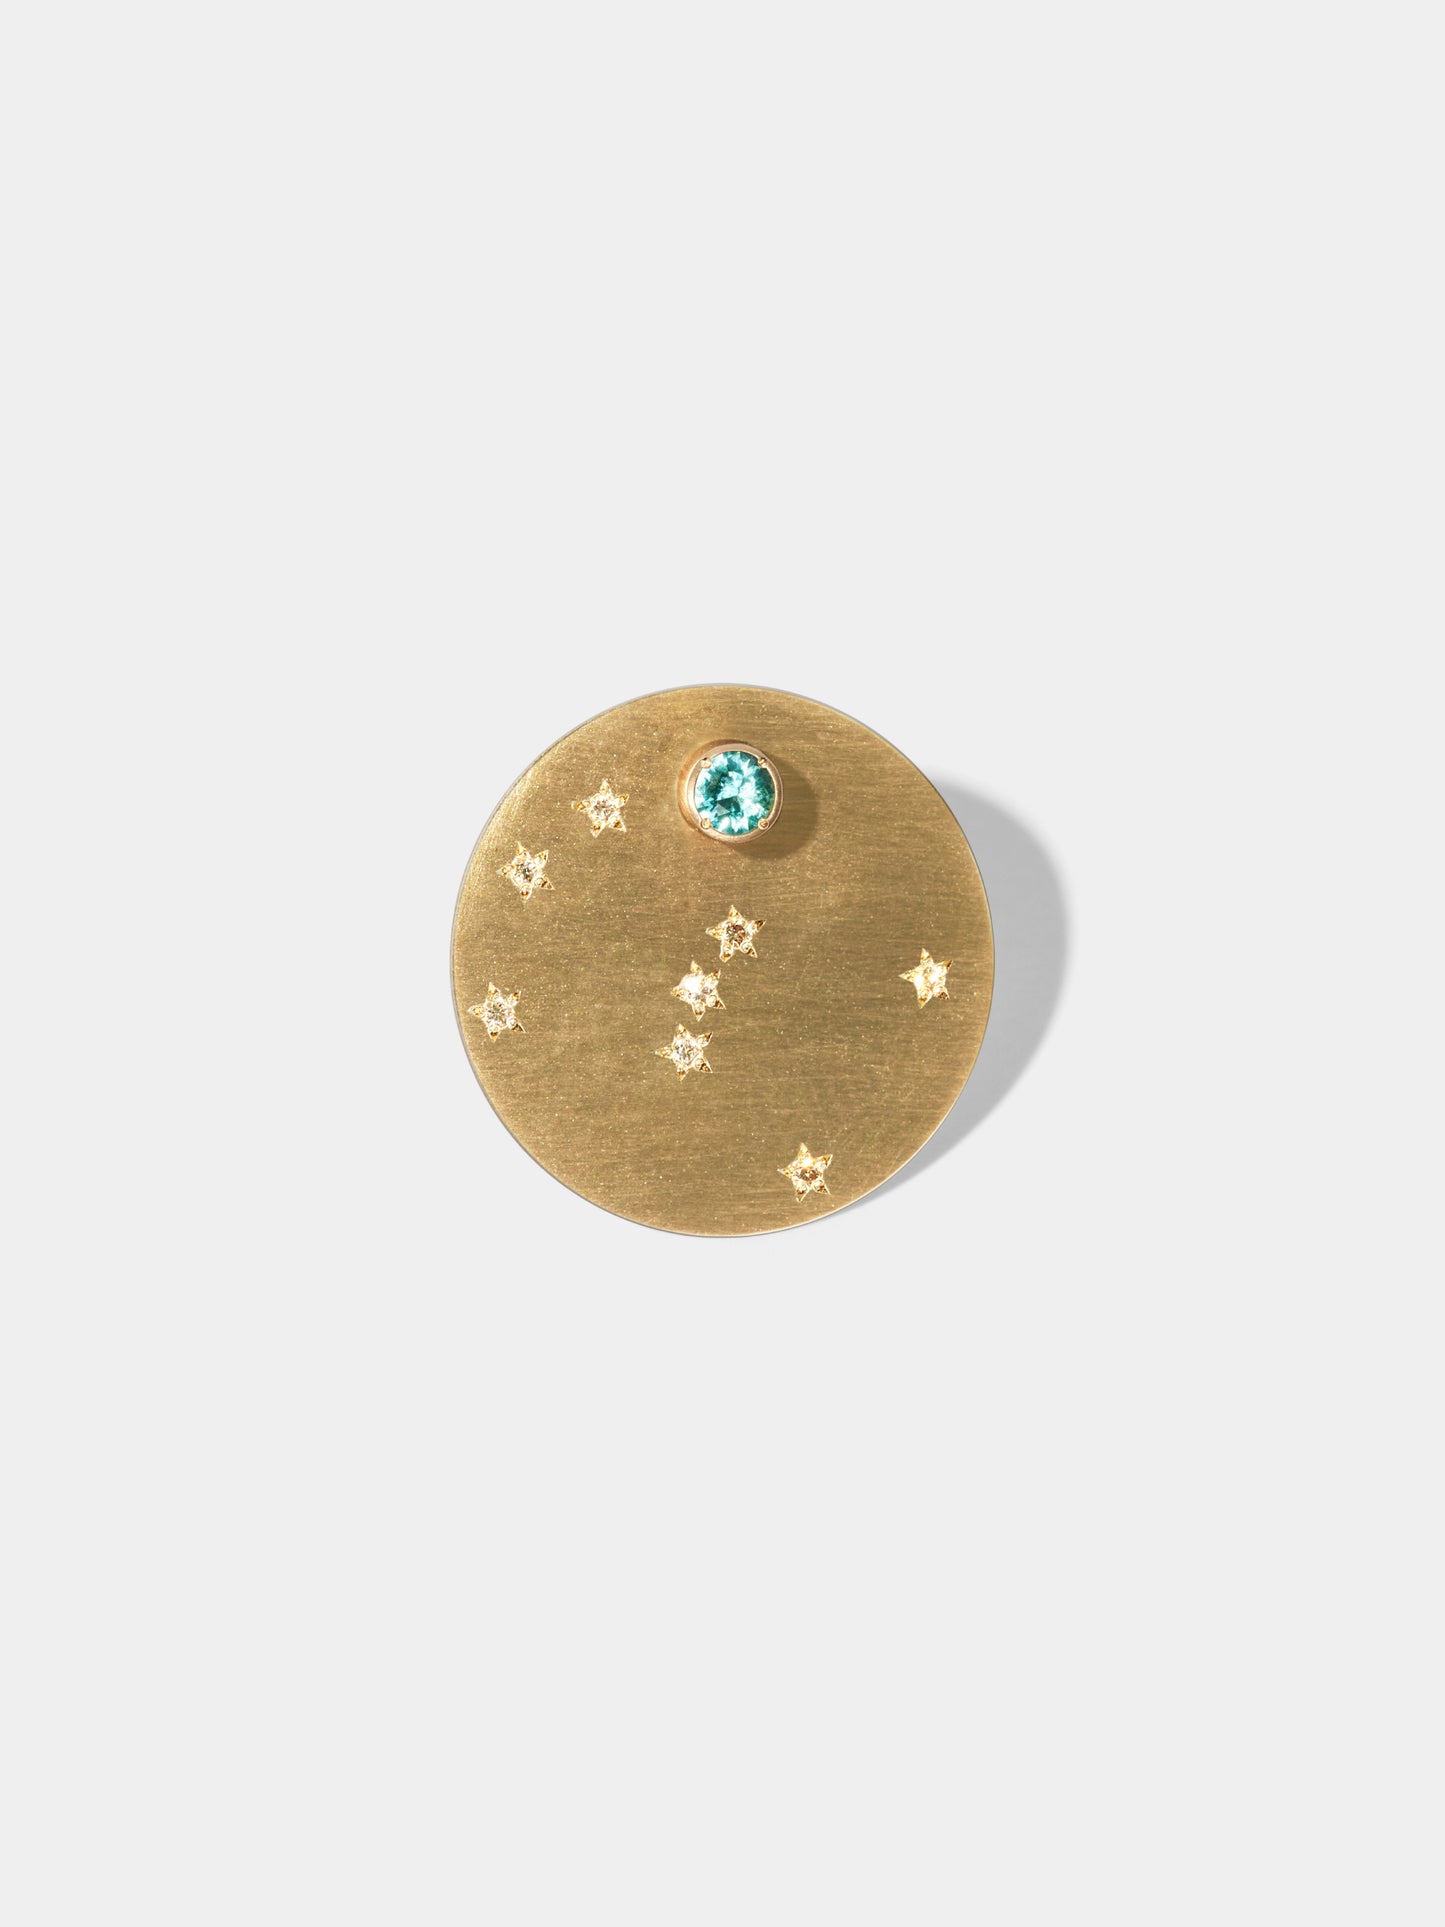 ASTERISM_Pierced Earring_Orion(オリオン座) / Emerald